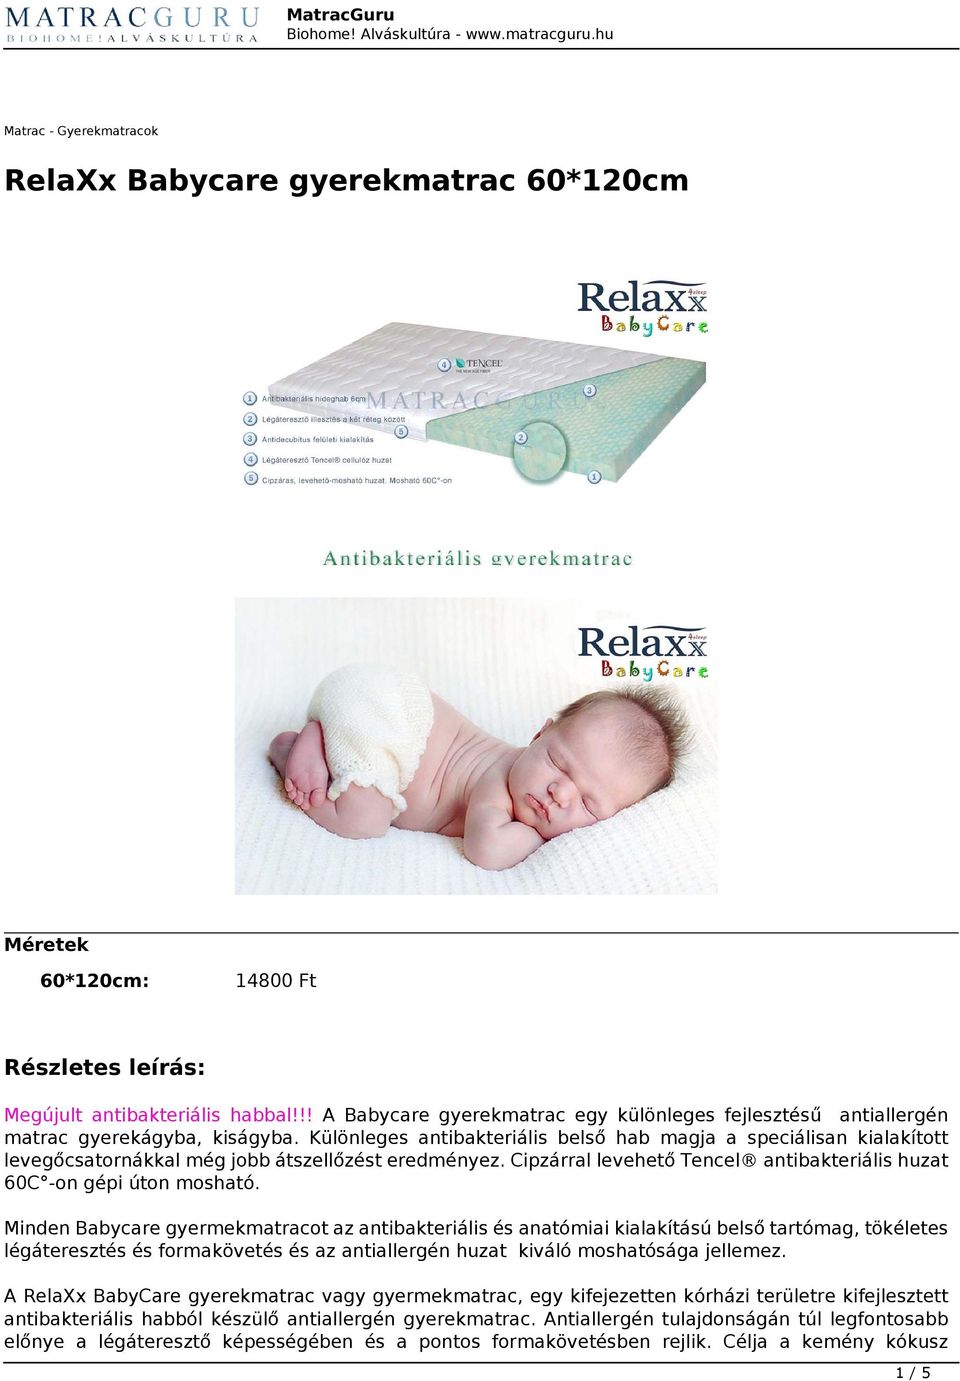 RelaXx Babycare gyerekmatrac 60*120cm - PDF Ingyenes letöltés